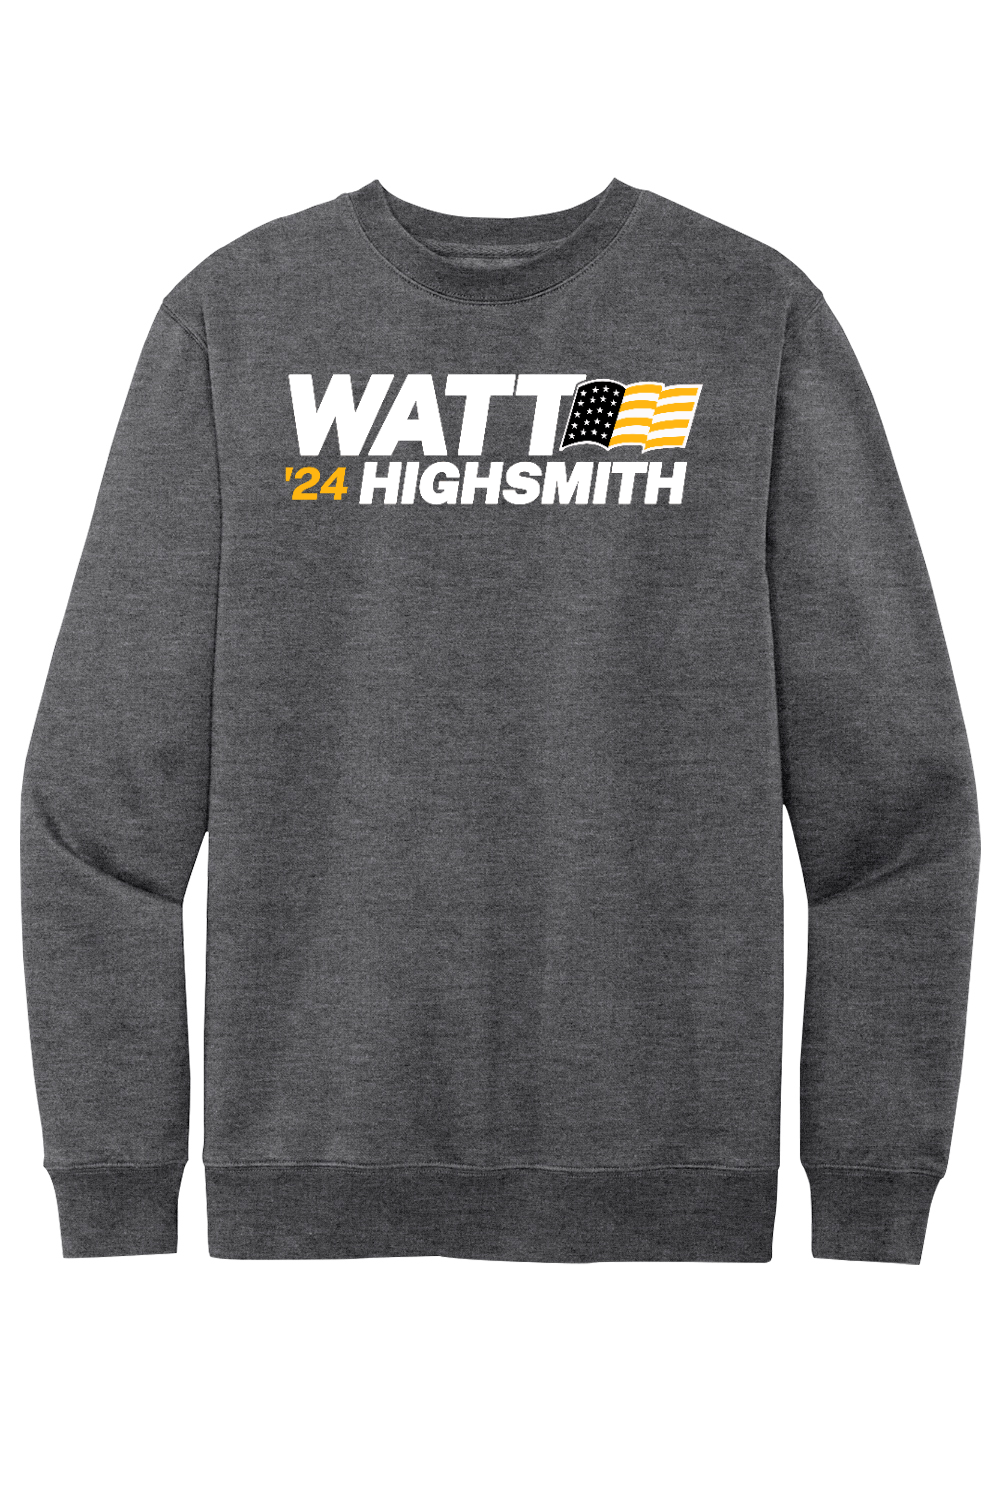 Watt Highsmith '24 - Fleece Crewneck Sweatshirt - Yinzylvania